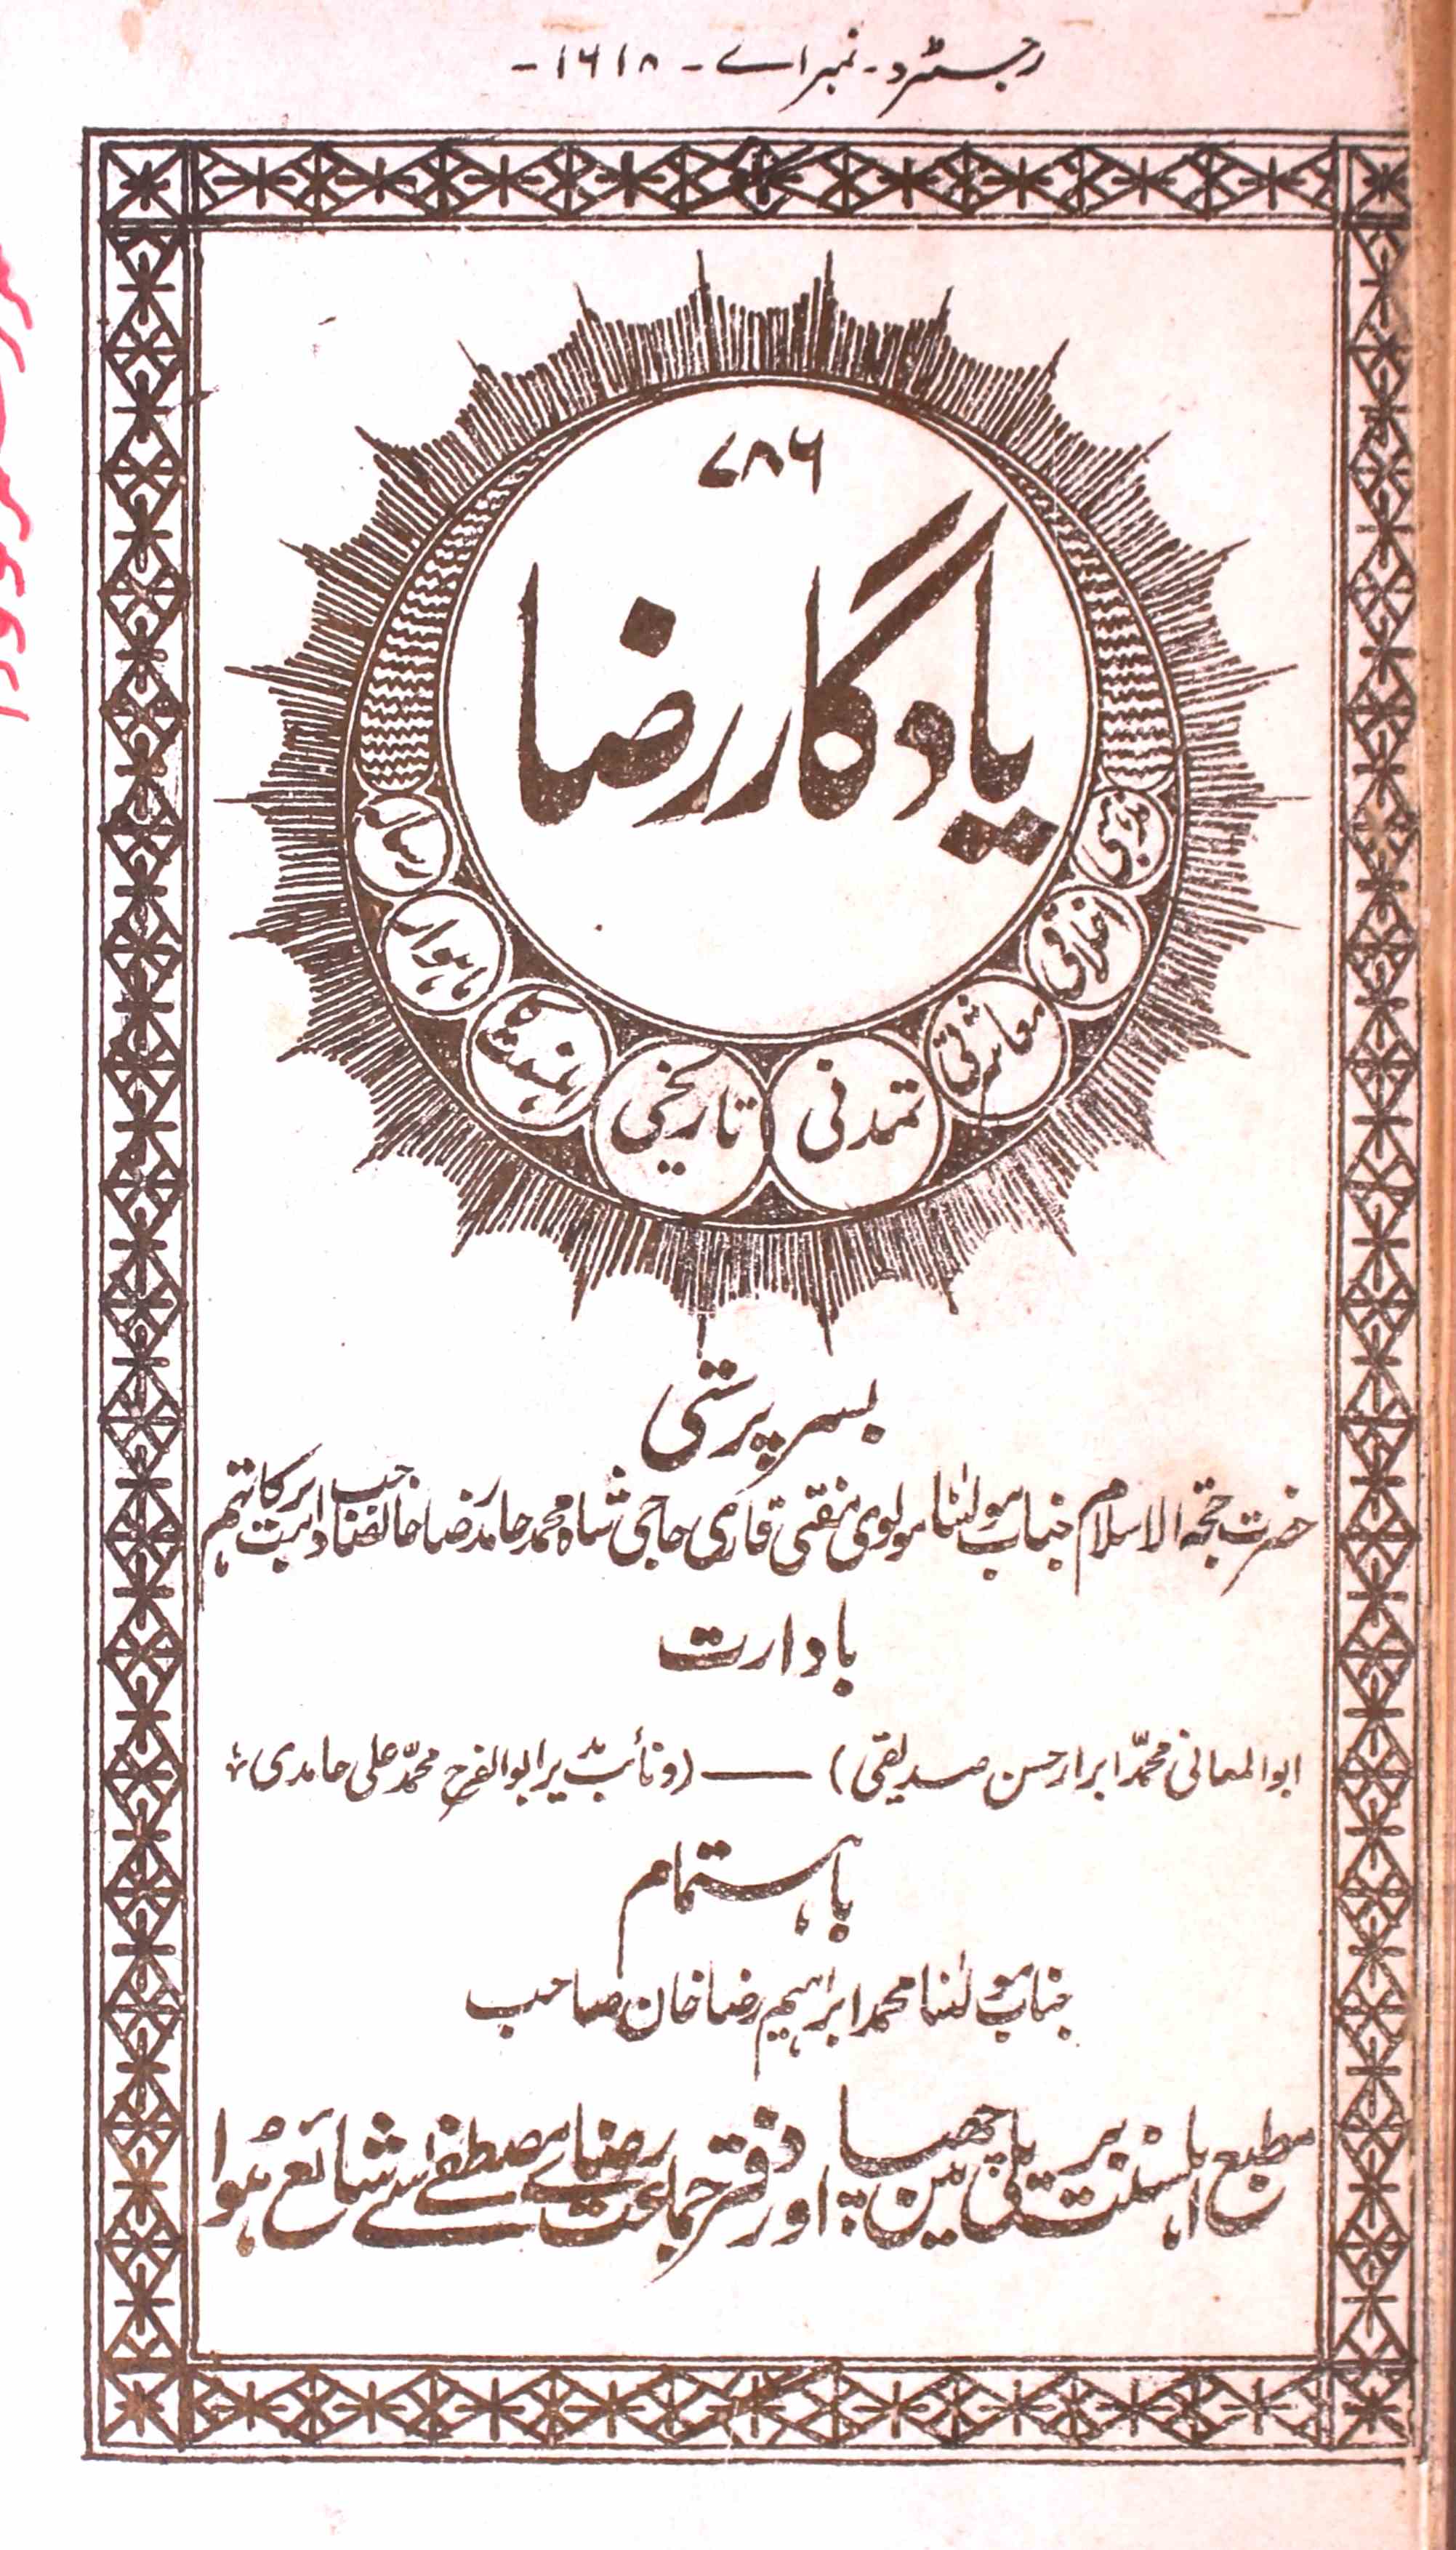 Yadgar e Raza Jild 1 No. 5 Rajab 1345 Hijri